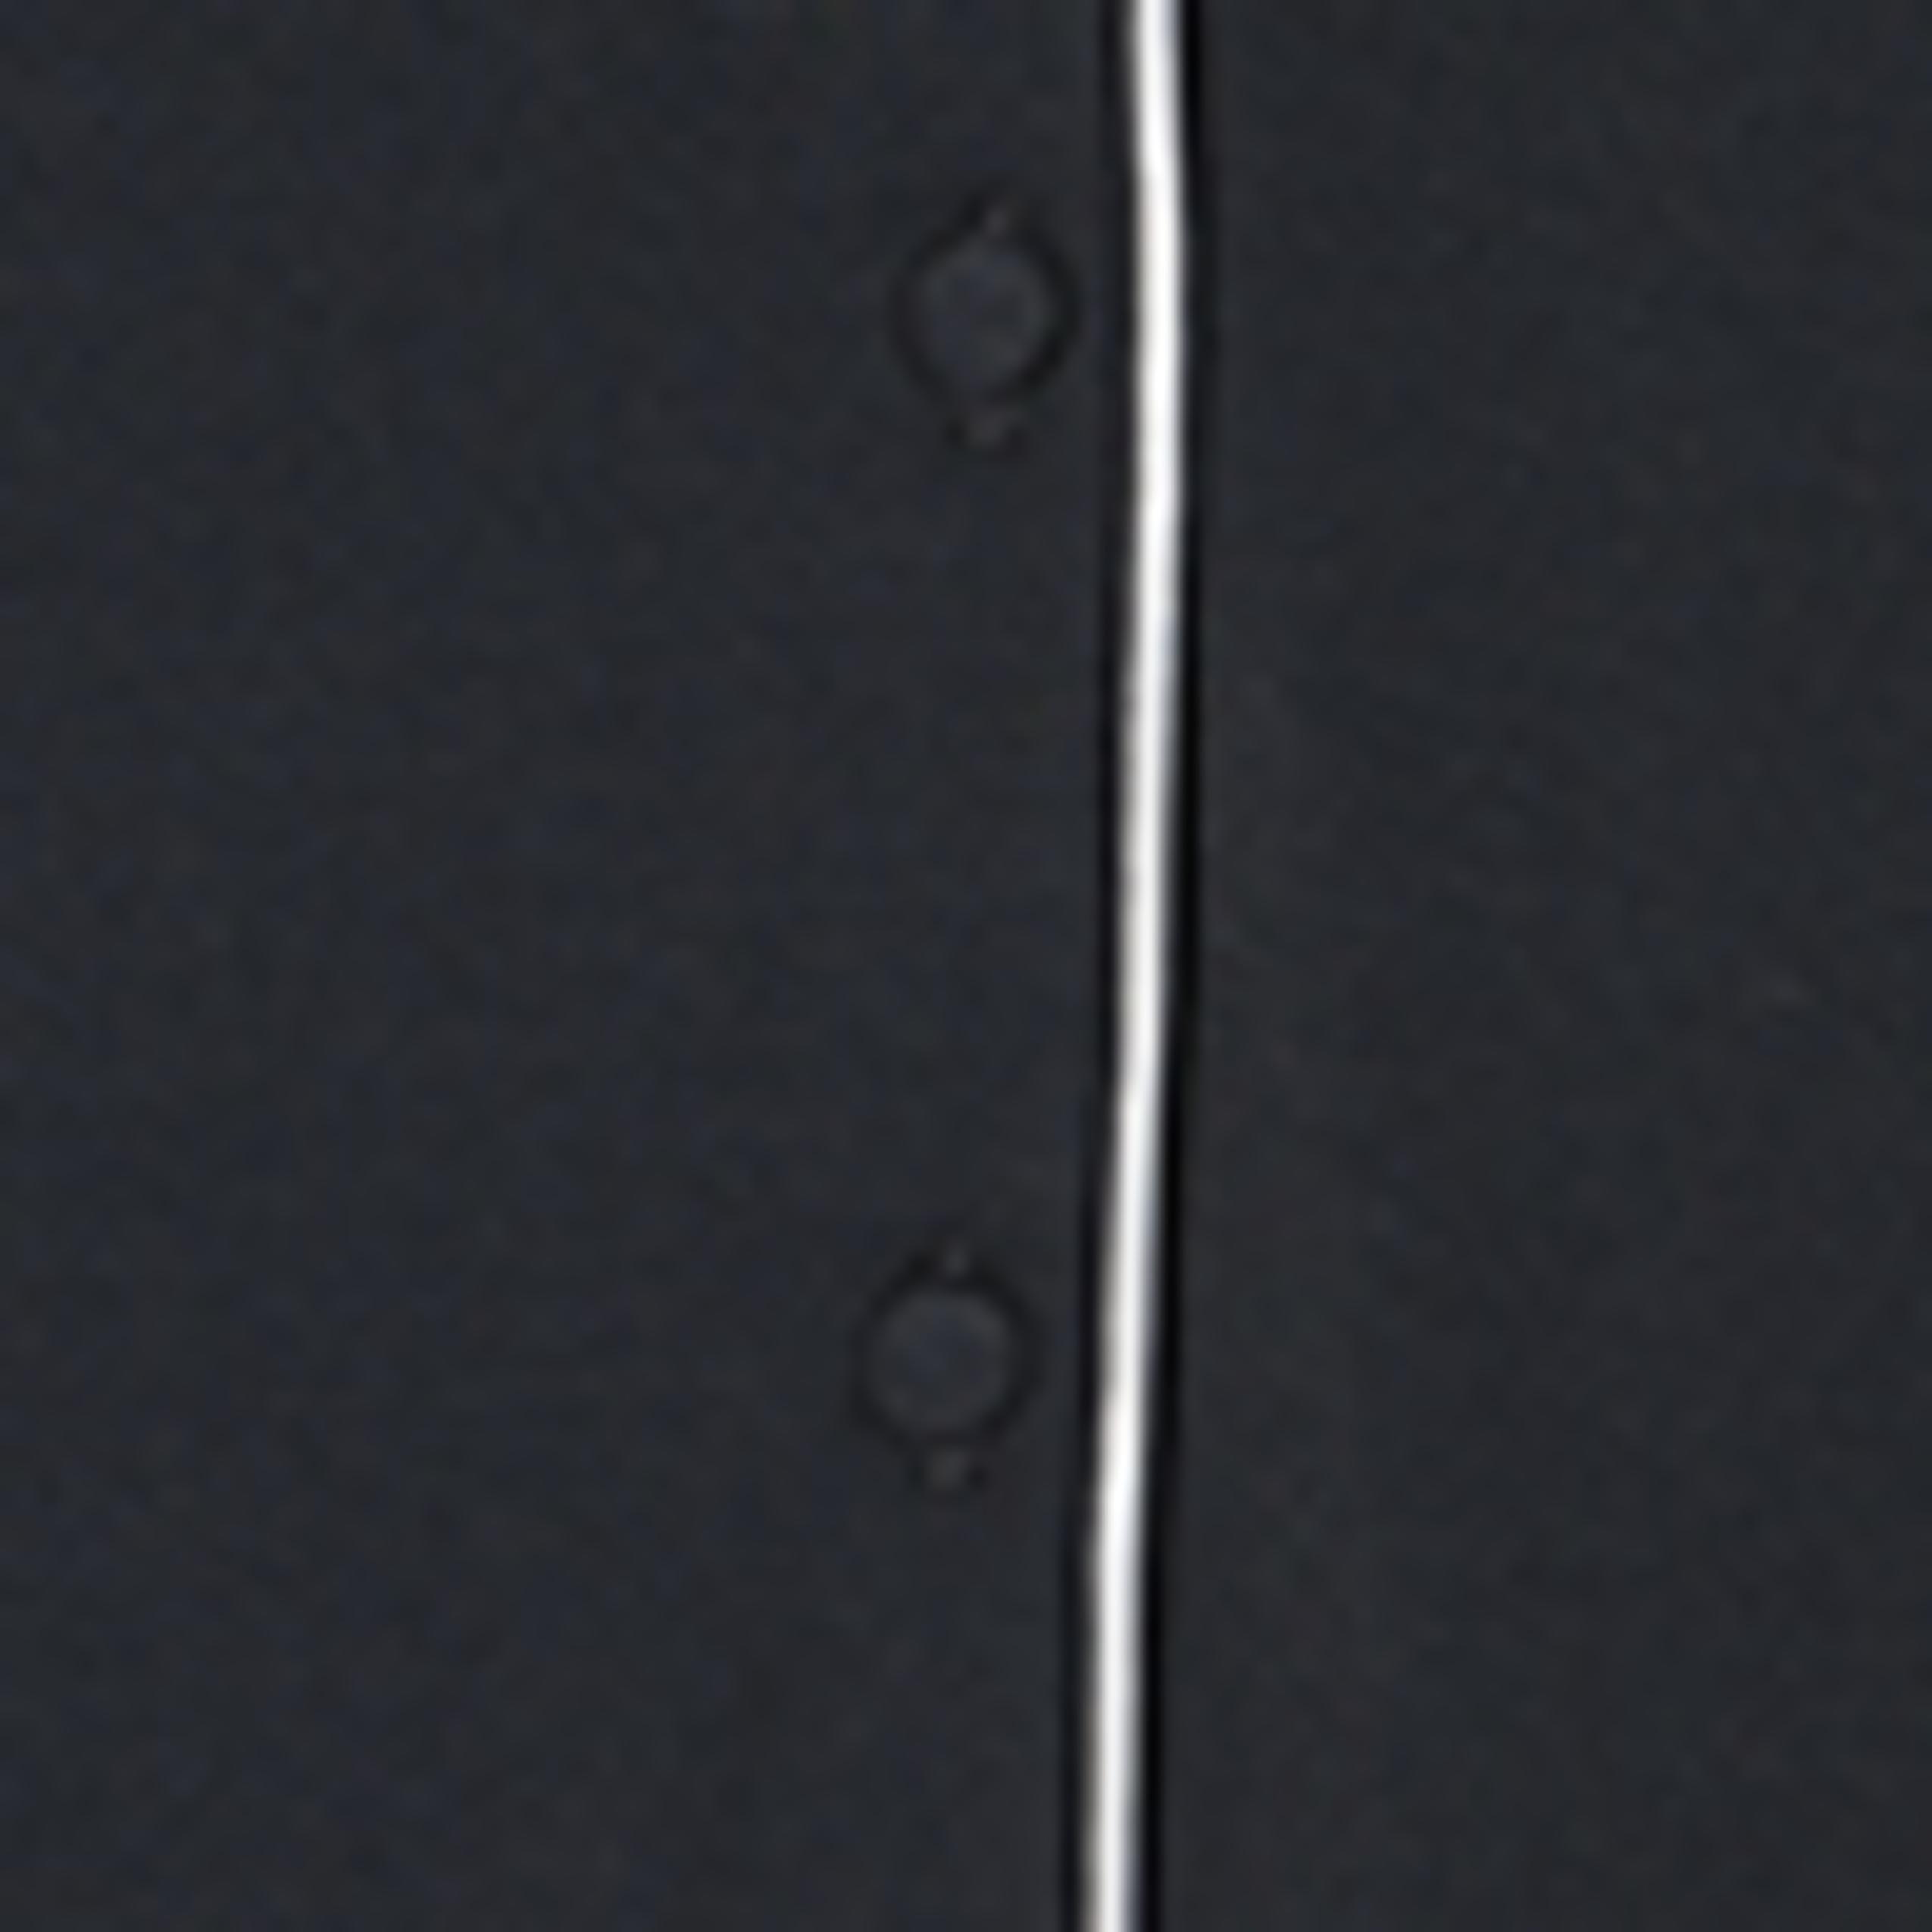 Intimissimi - Black Long-Sleeve Micromodal Jacket